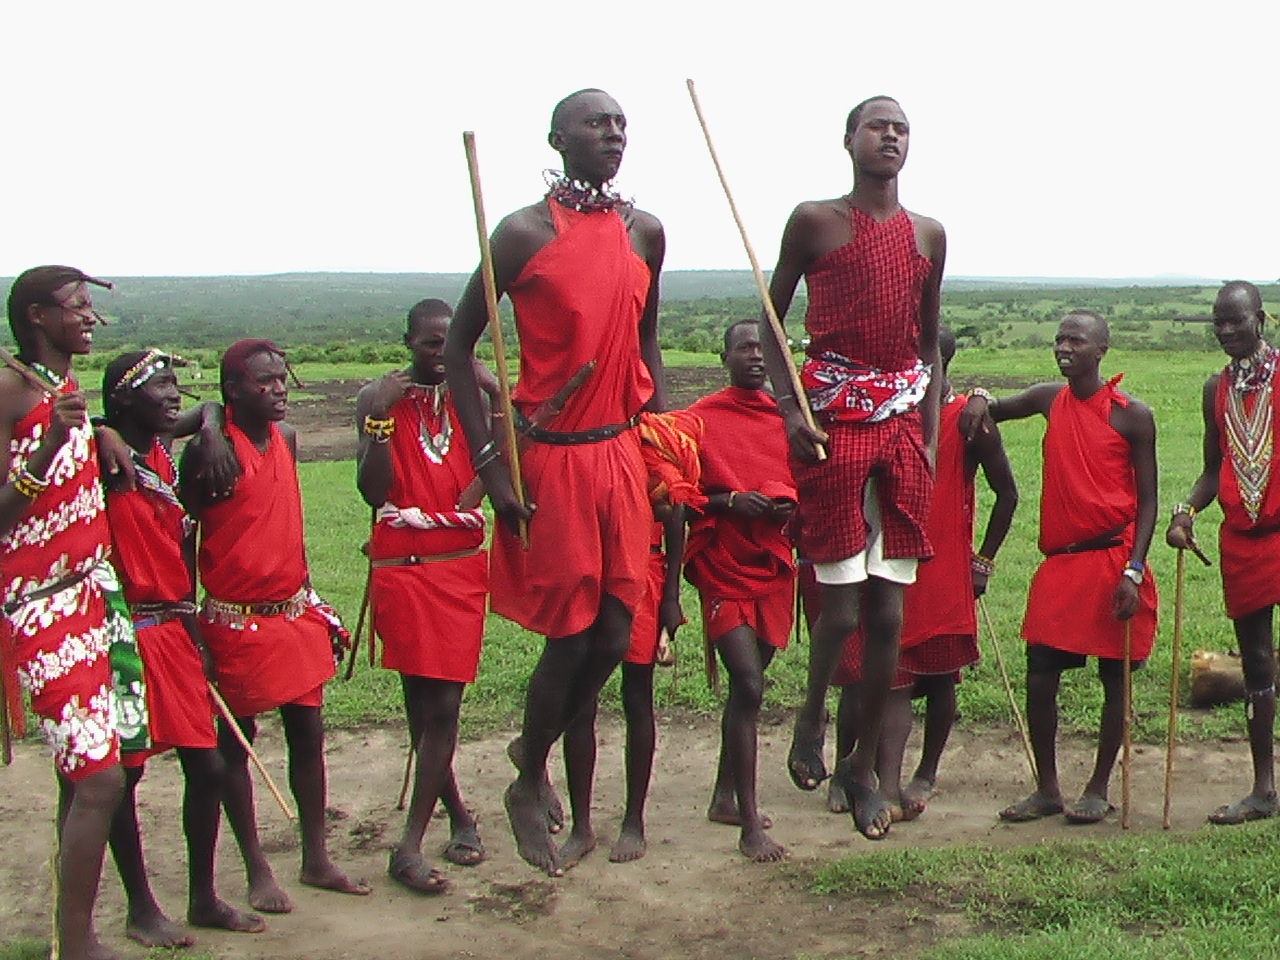 ケニア 元旦にマサイ族を訪ねて爆笑の火おこしを見た 地球のどこかから